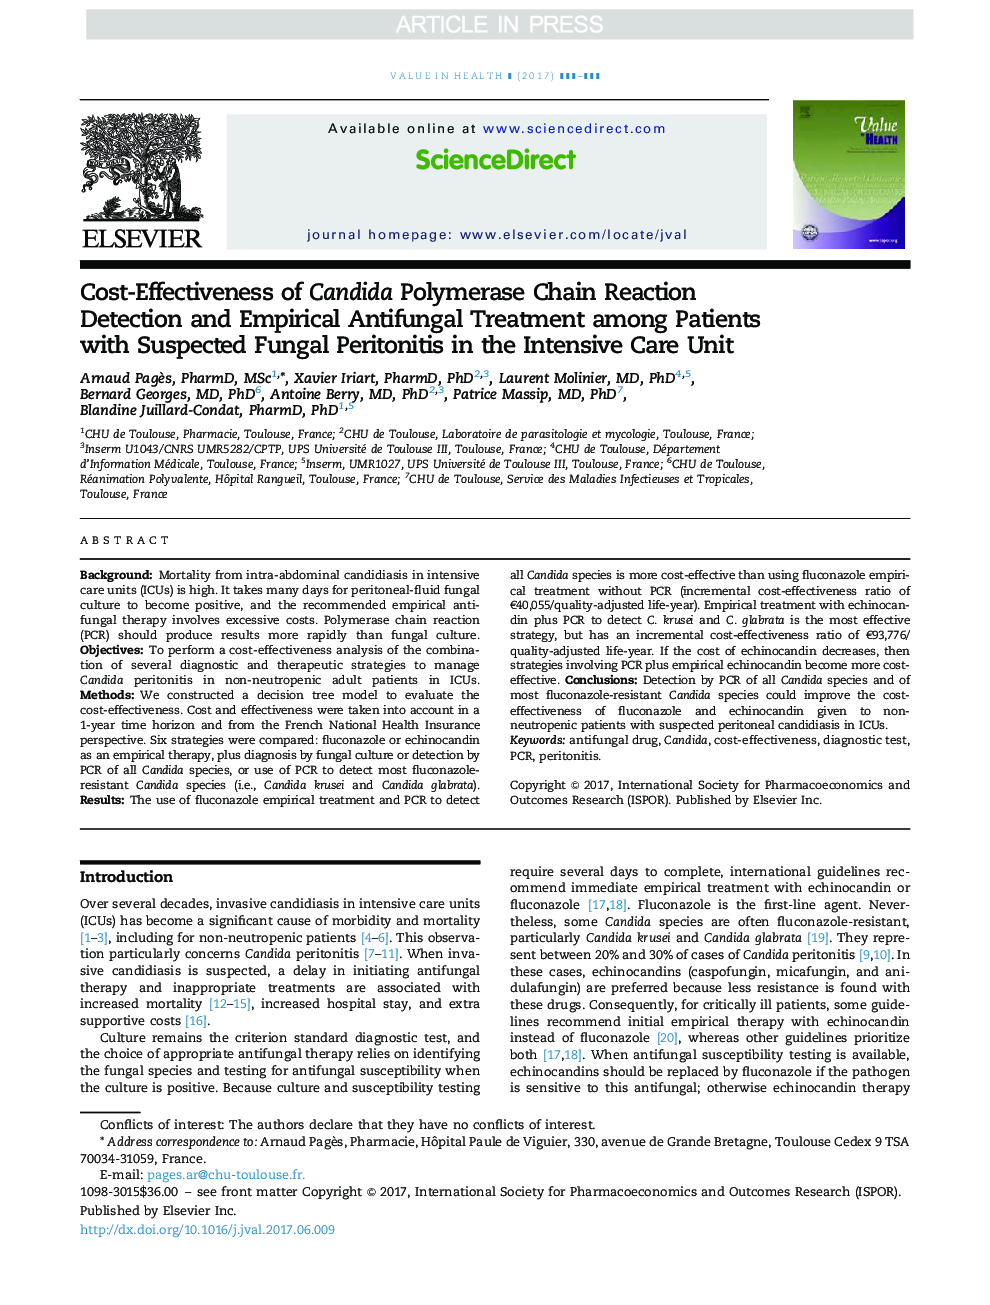 بررسی اثربخشی تشخیص واکنش زنجیره ای کاندیدا پلیمراز و درمان ضد قارچی تجربی در بیماران مبتلا به پریتونیت قارچی در بخش مراقبت های ویژه 